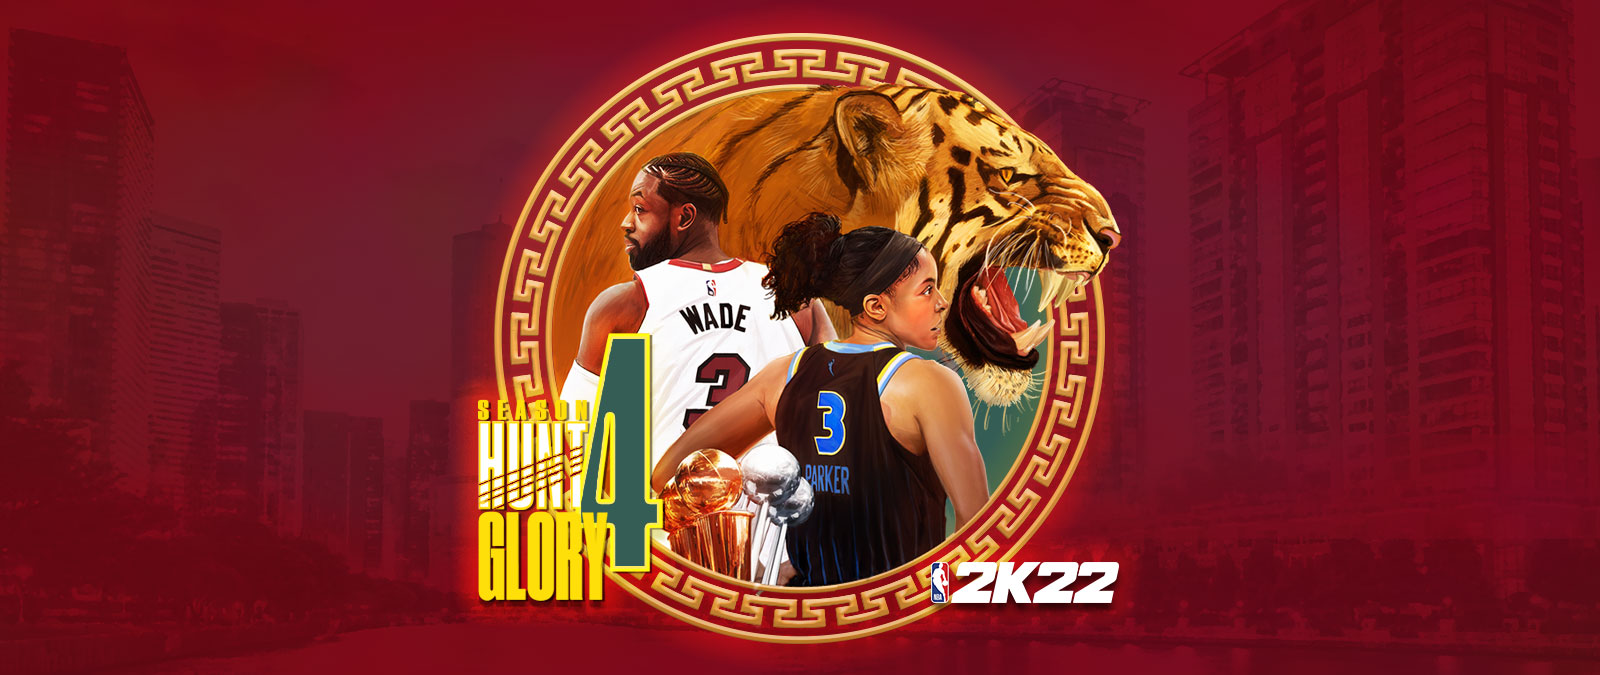 NBA 2K22, Season 4: Hunt 4 Glory, ein kreisförmiges Grafikelement über einer rot gefärbten Stadtlandschaft zeigt einen knurrenden Tiger sowie Dwayne Wade und Candace Parker mit zugewandten Rücken. 